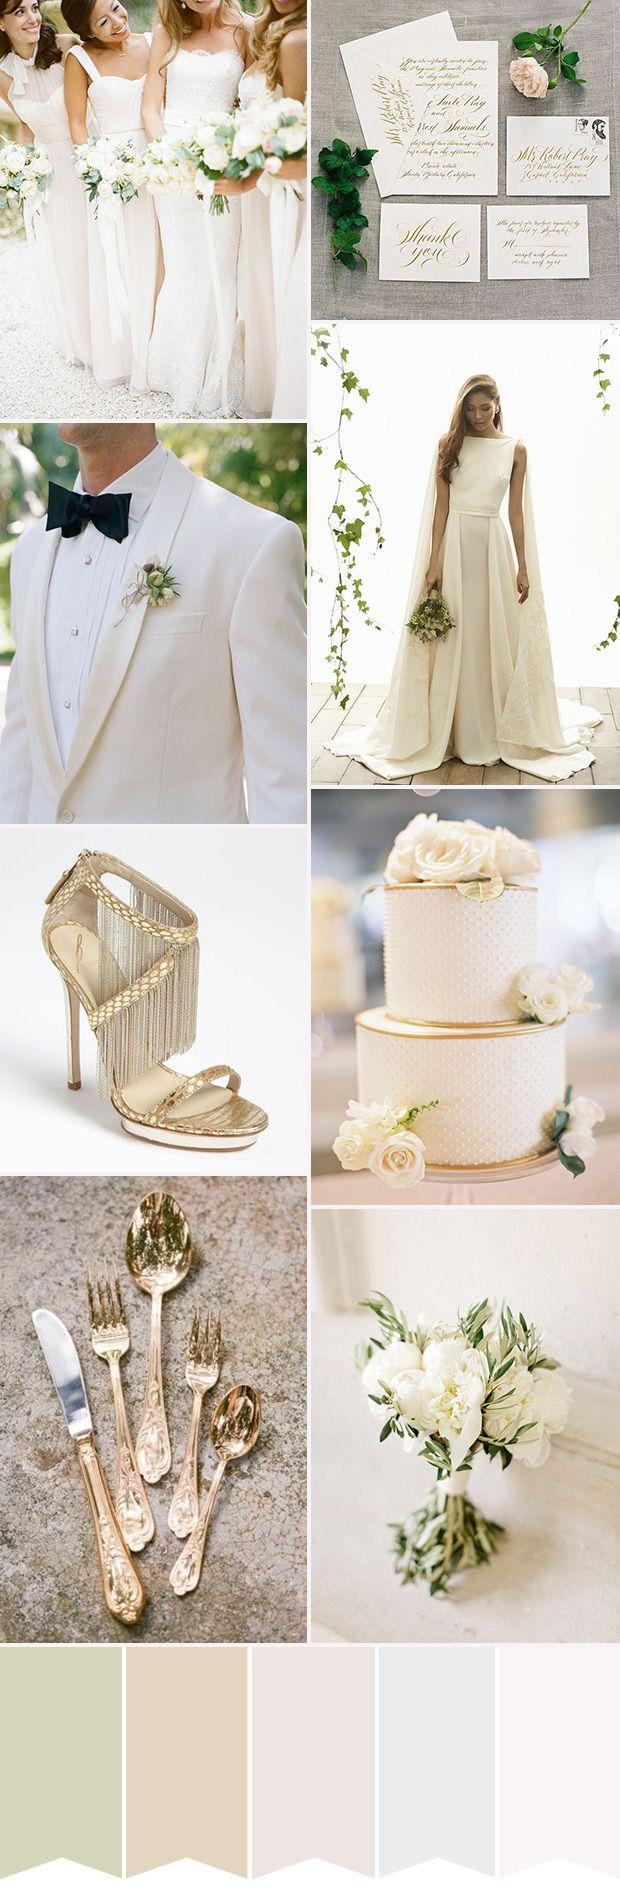 زفاف - The Ultimate Glam: White Wedding Inspiration